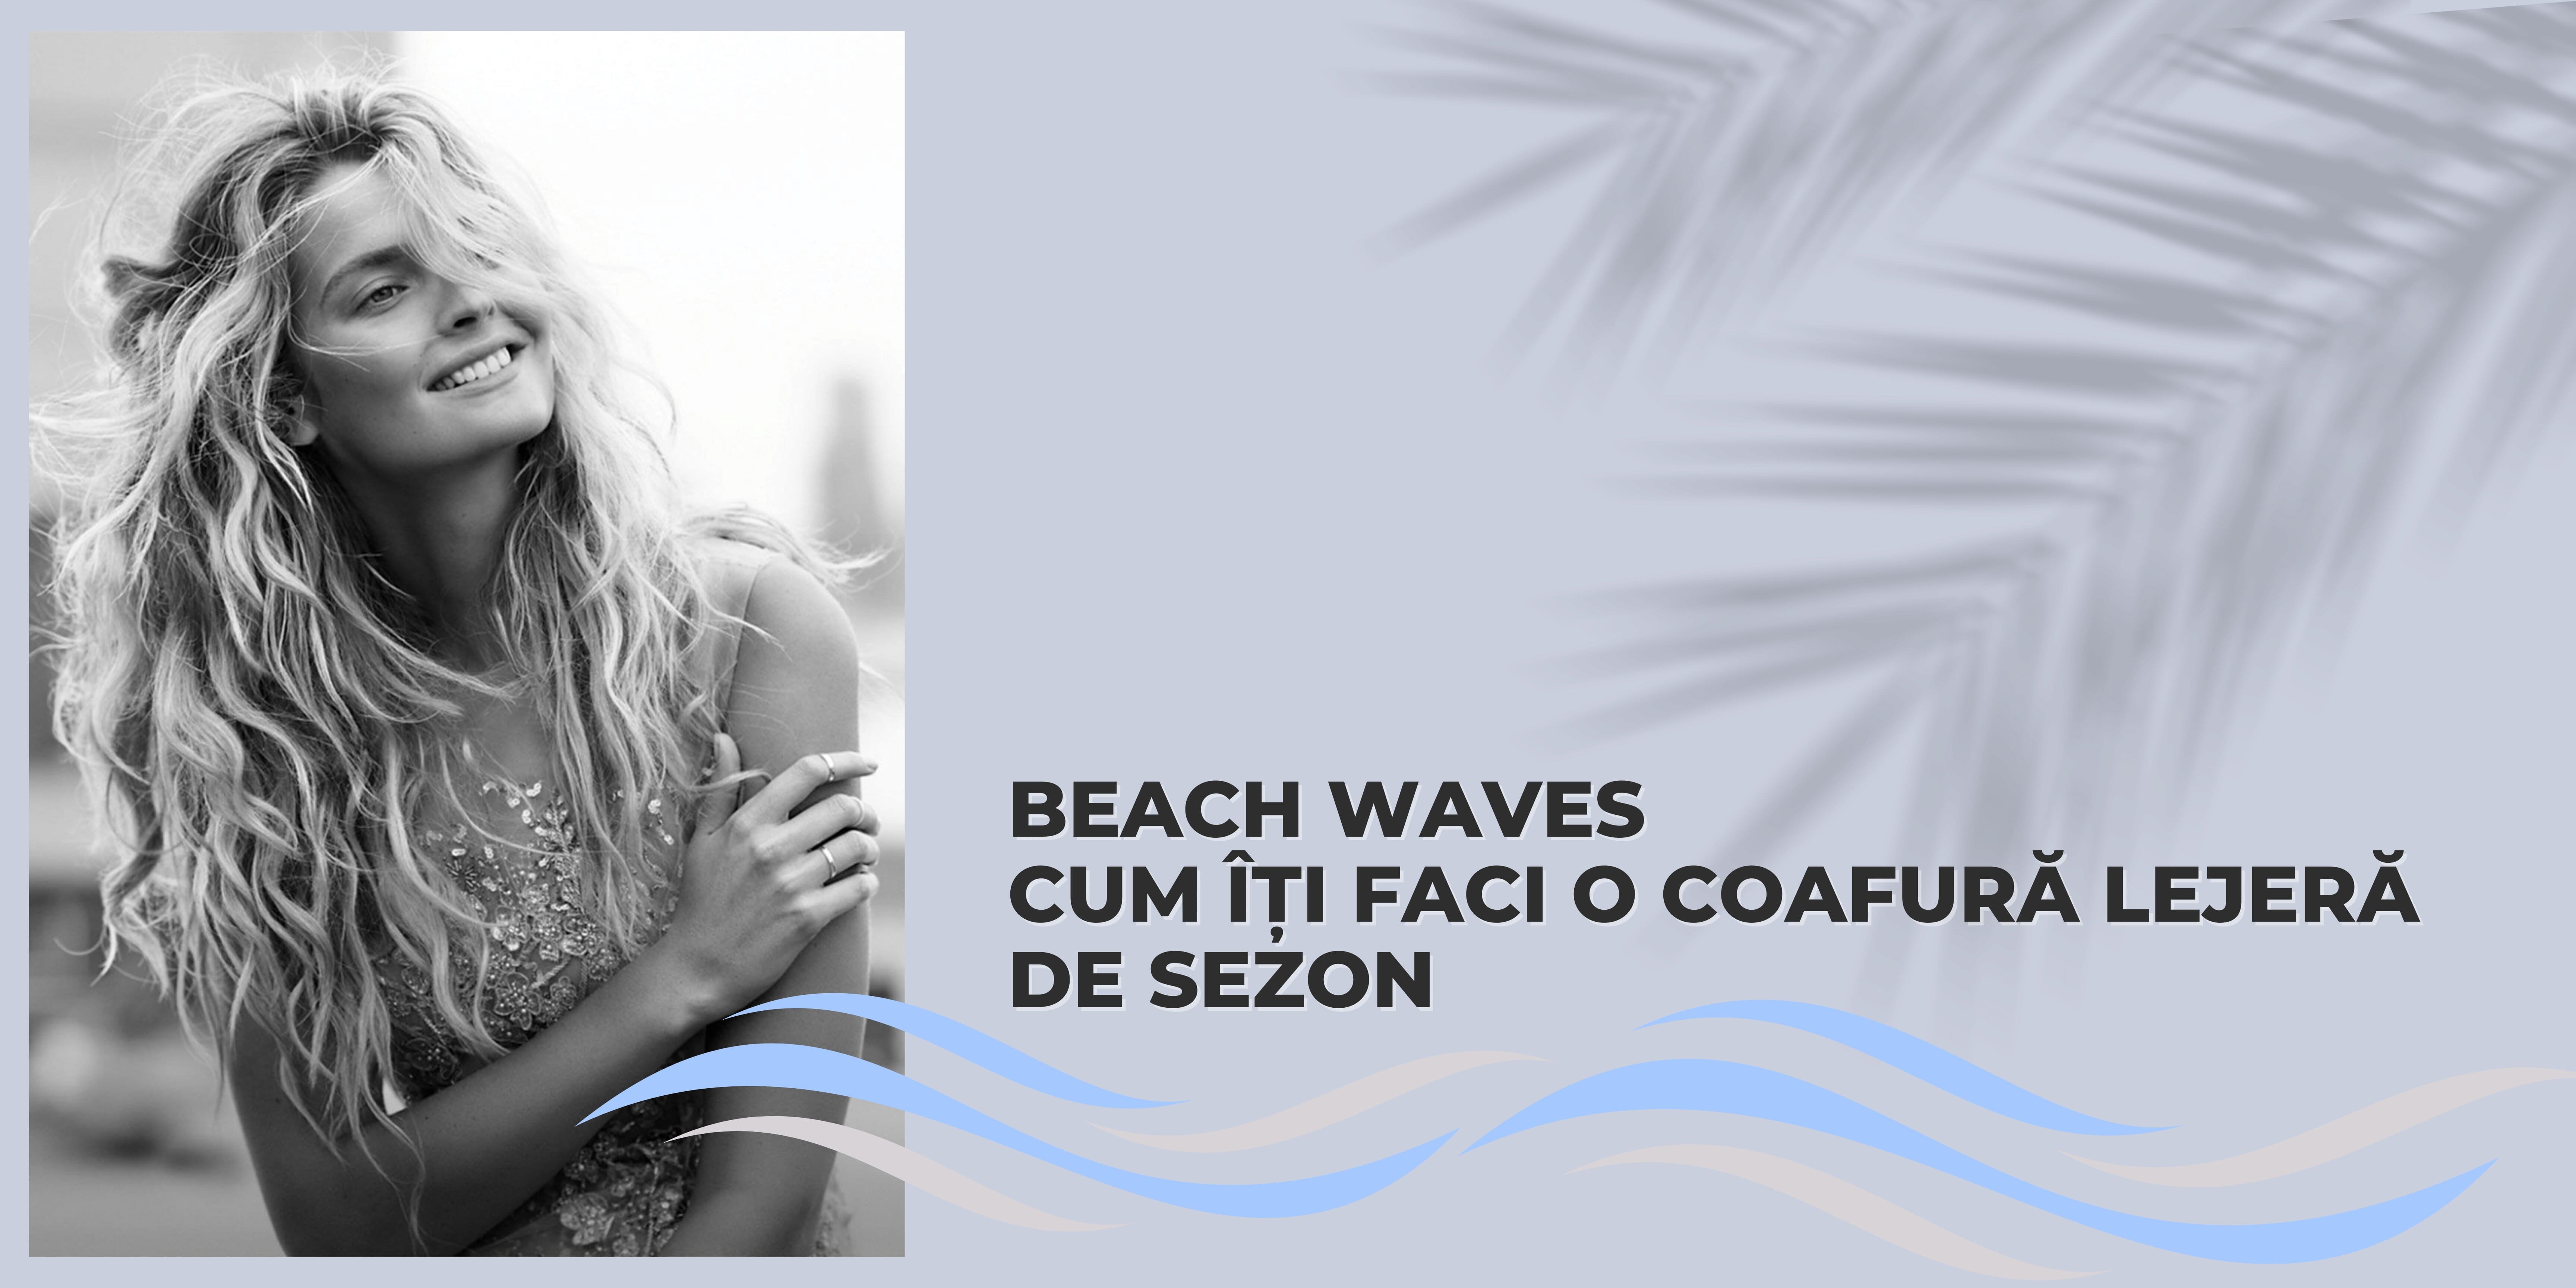 Cum îți faci o coafură lejeră de sezon - beach waves